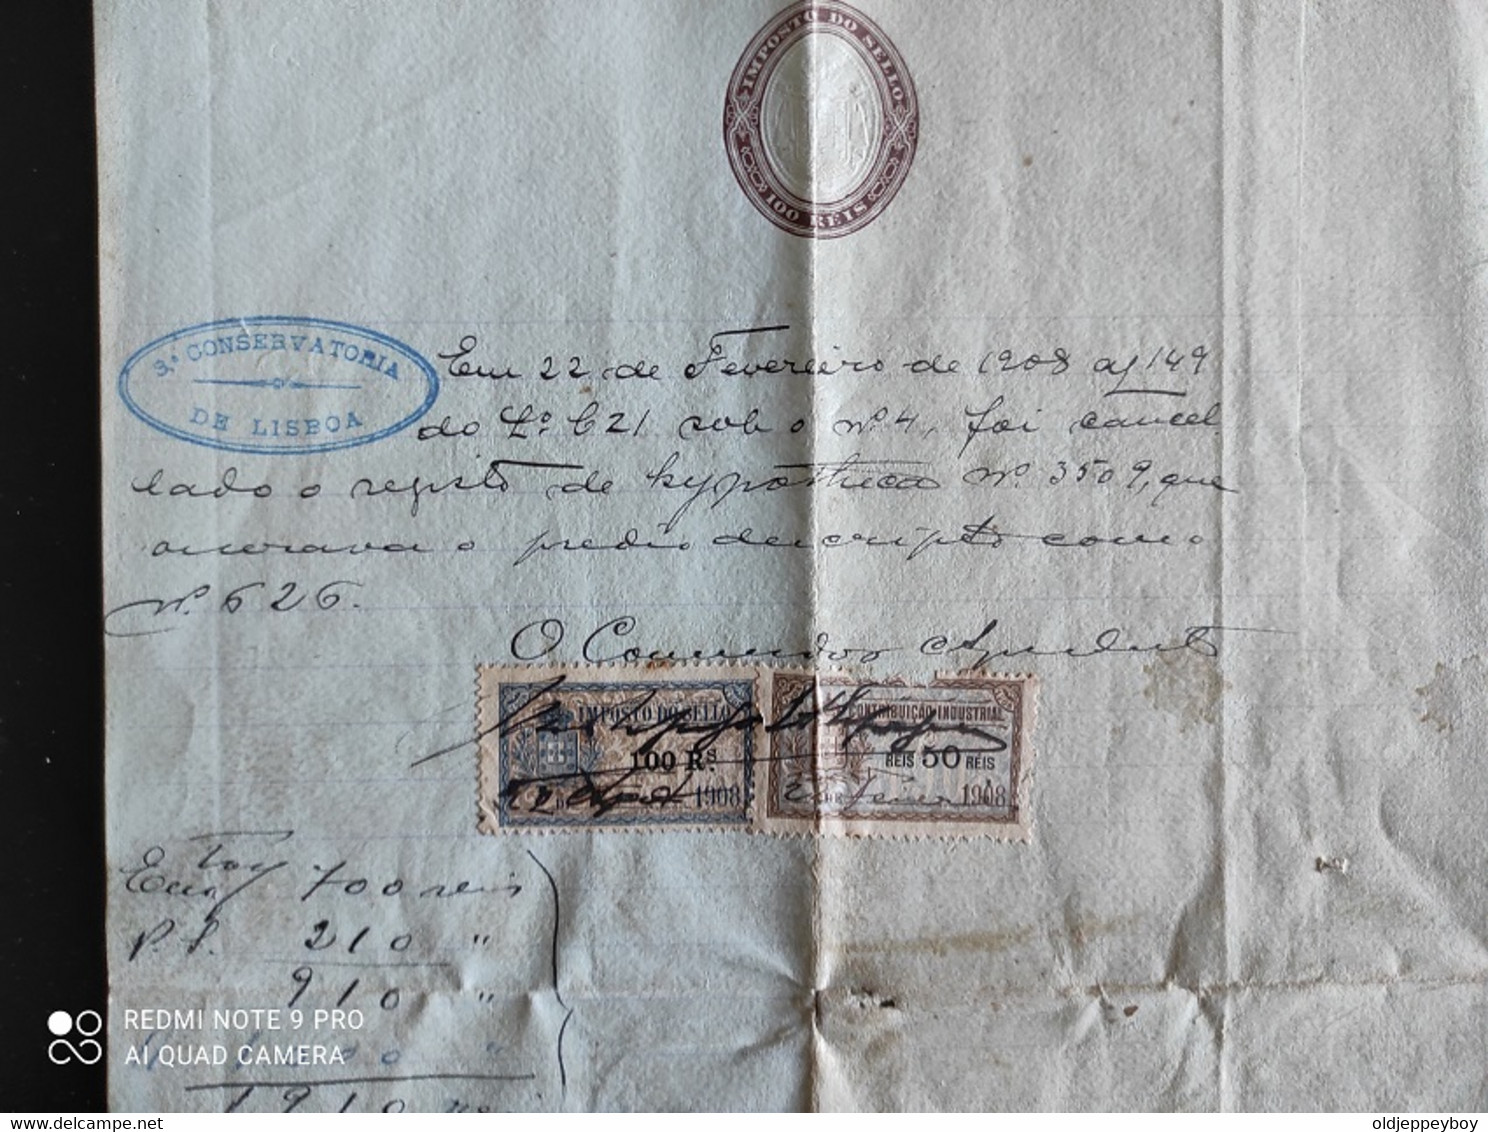 Portugal  1908 CONSERVATÓRIA DE LISBOA ANULAÇÃO REGISTO DE HIPOTECA com selos de contribuição industrial . TAX FISCAL